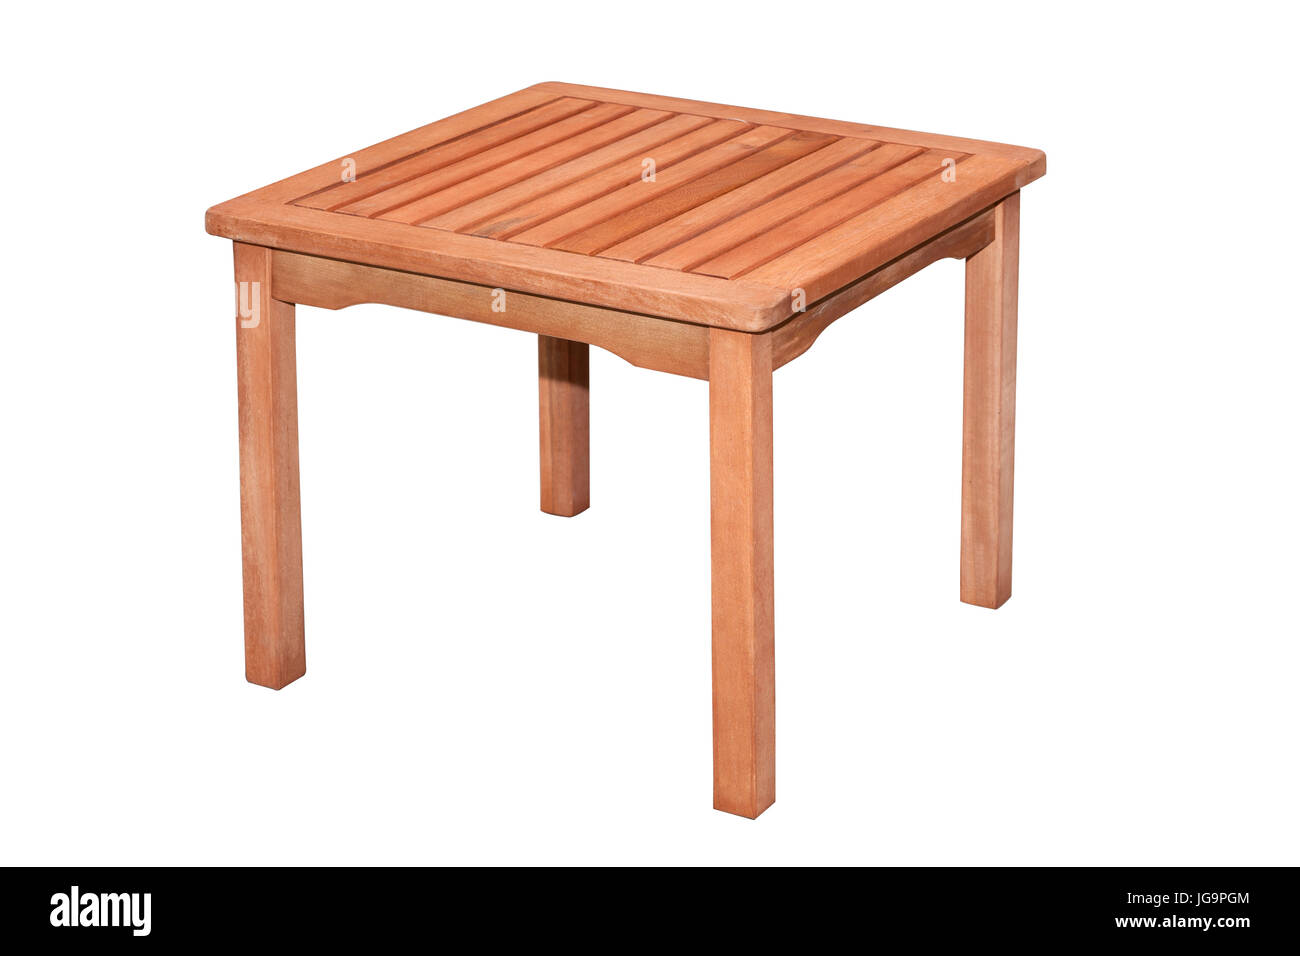 Petite table en bois auxiliaire sur fond blanc avec clipping path Banque D'Images